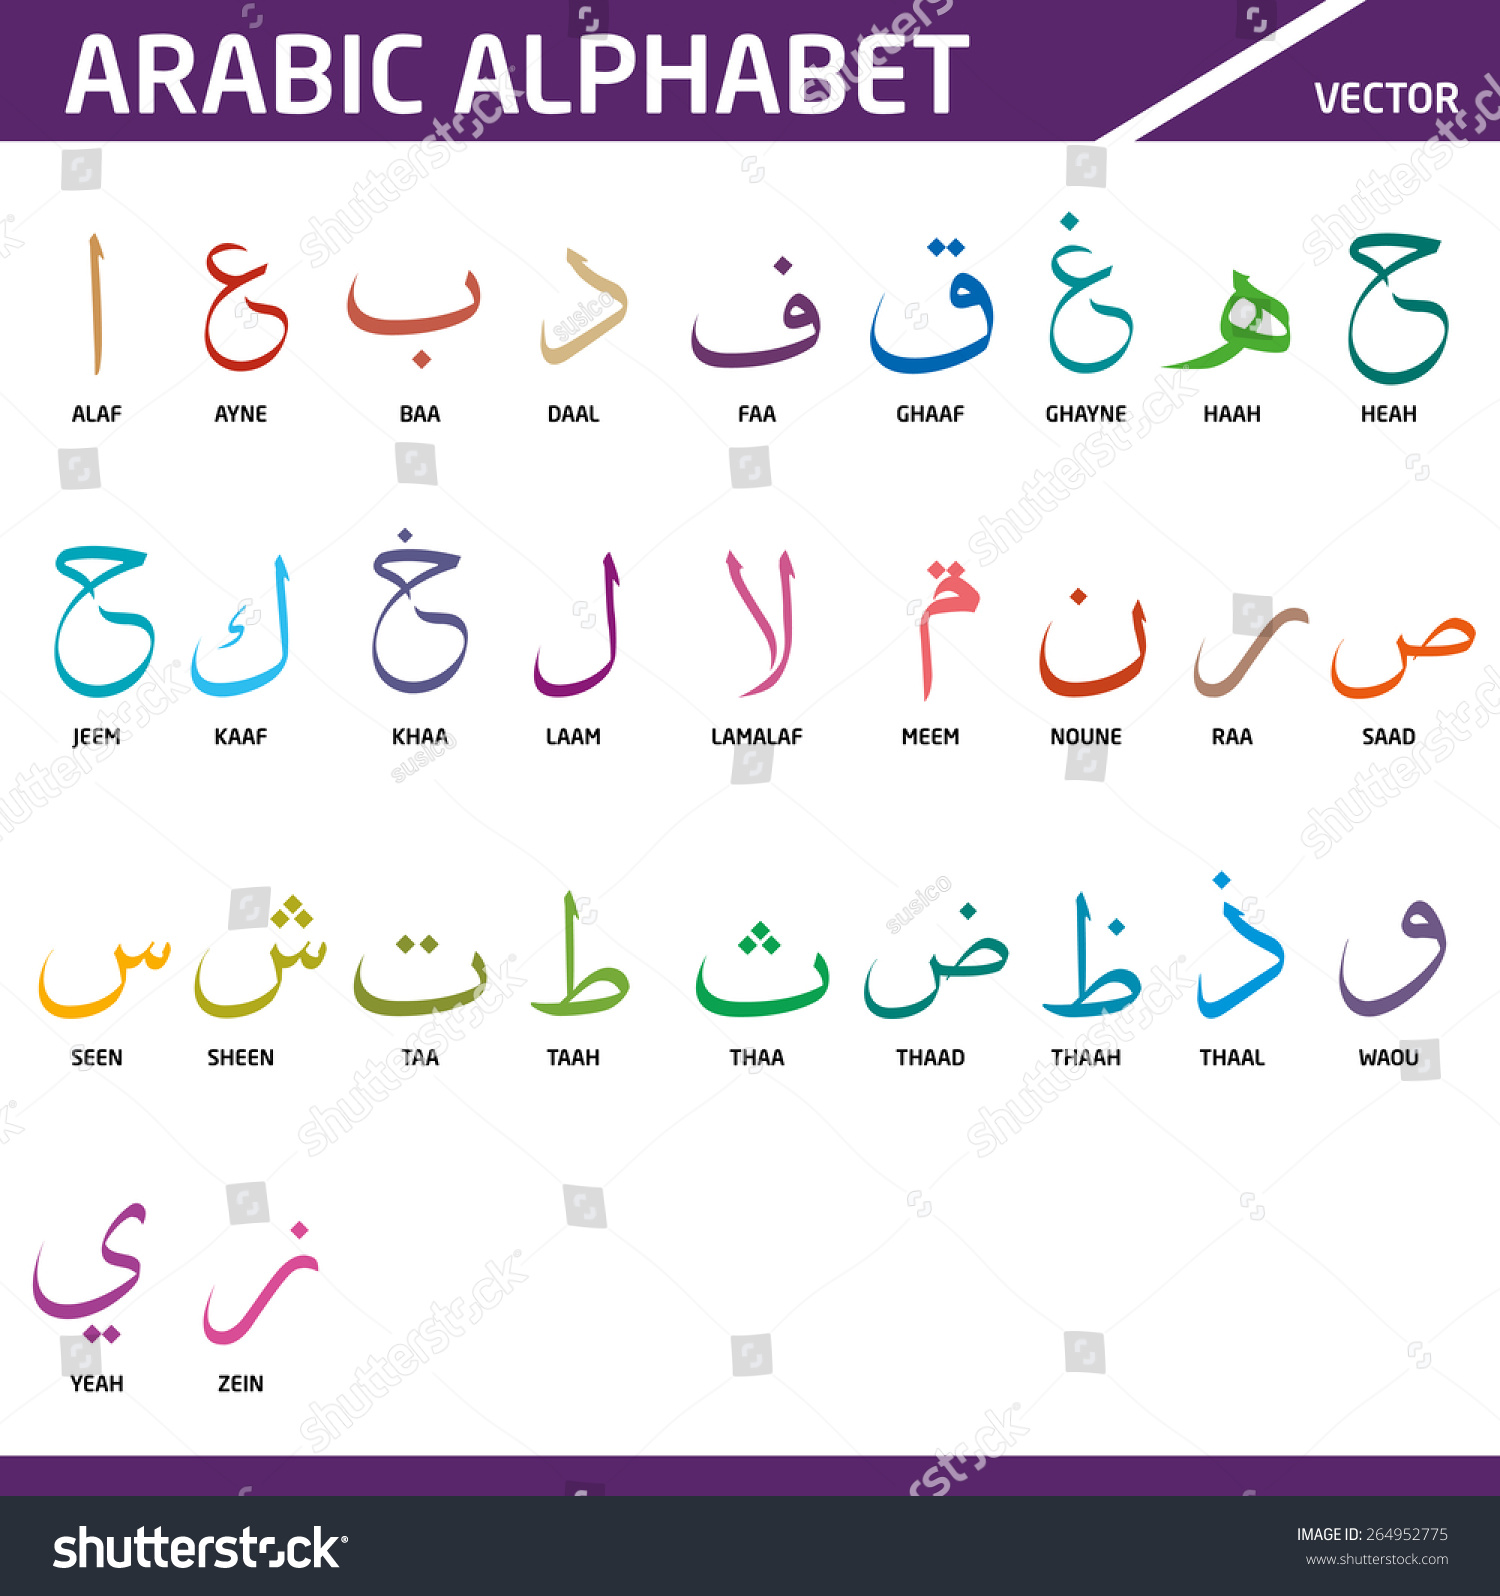 Арабский алфавит для начинающих с нуля